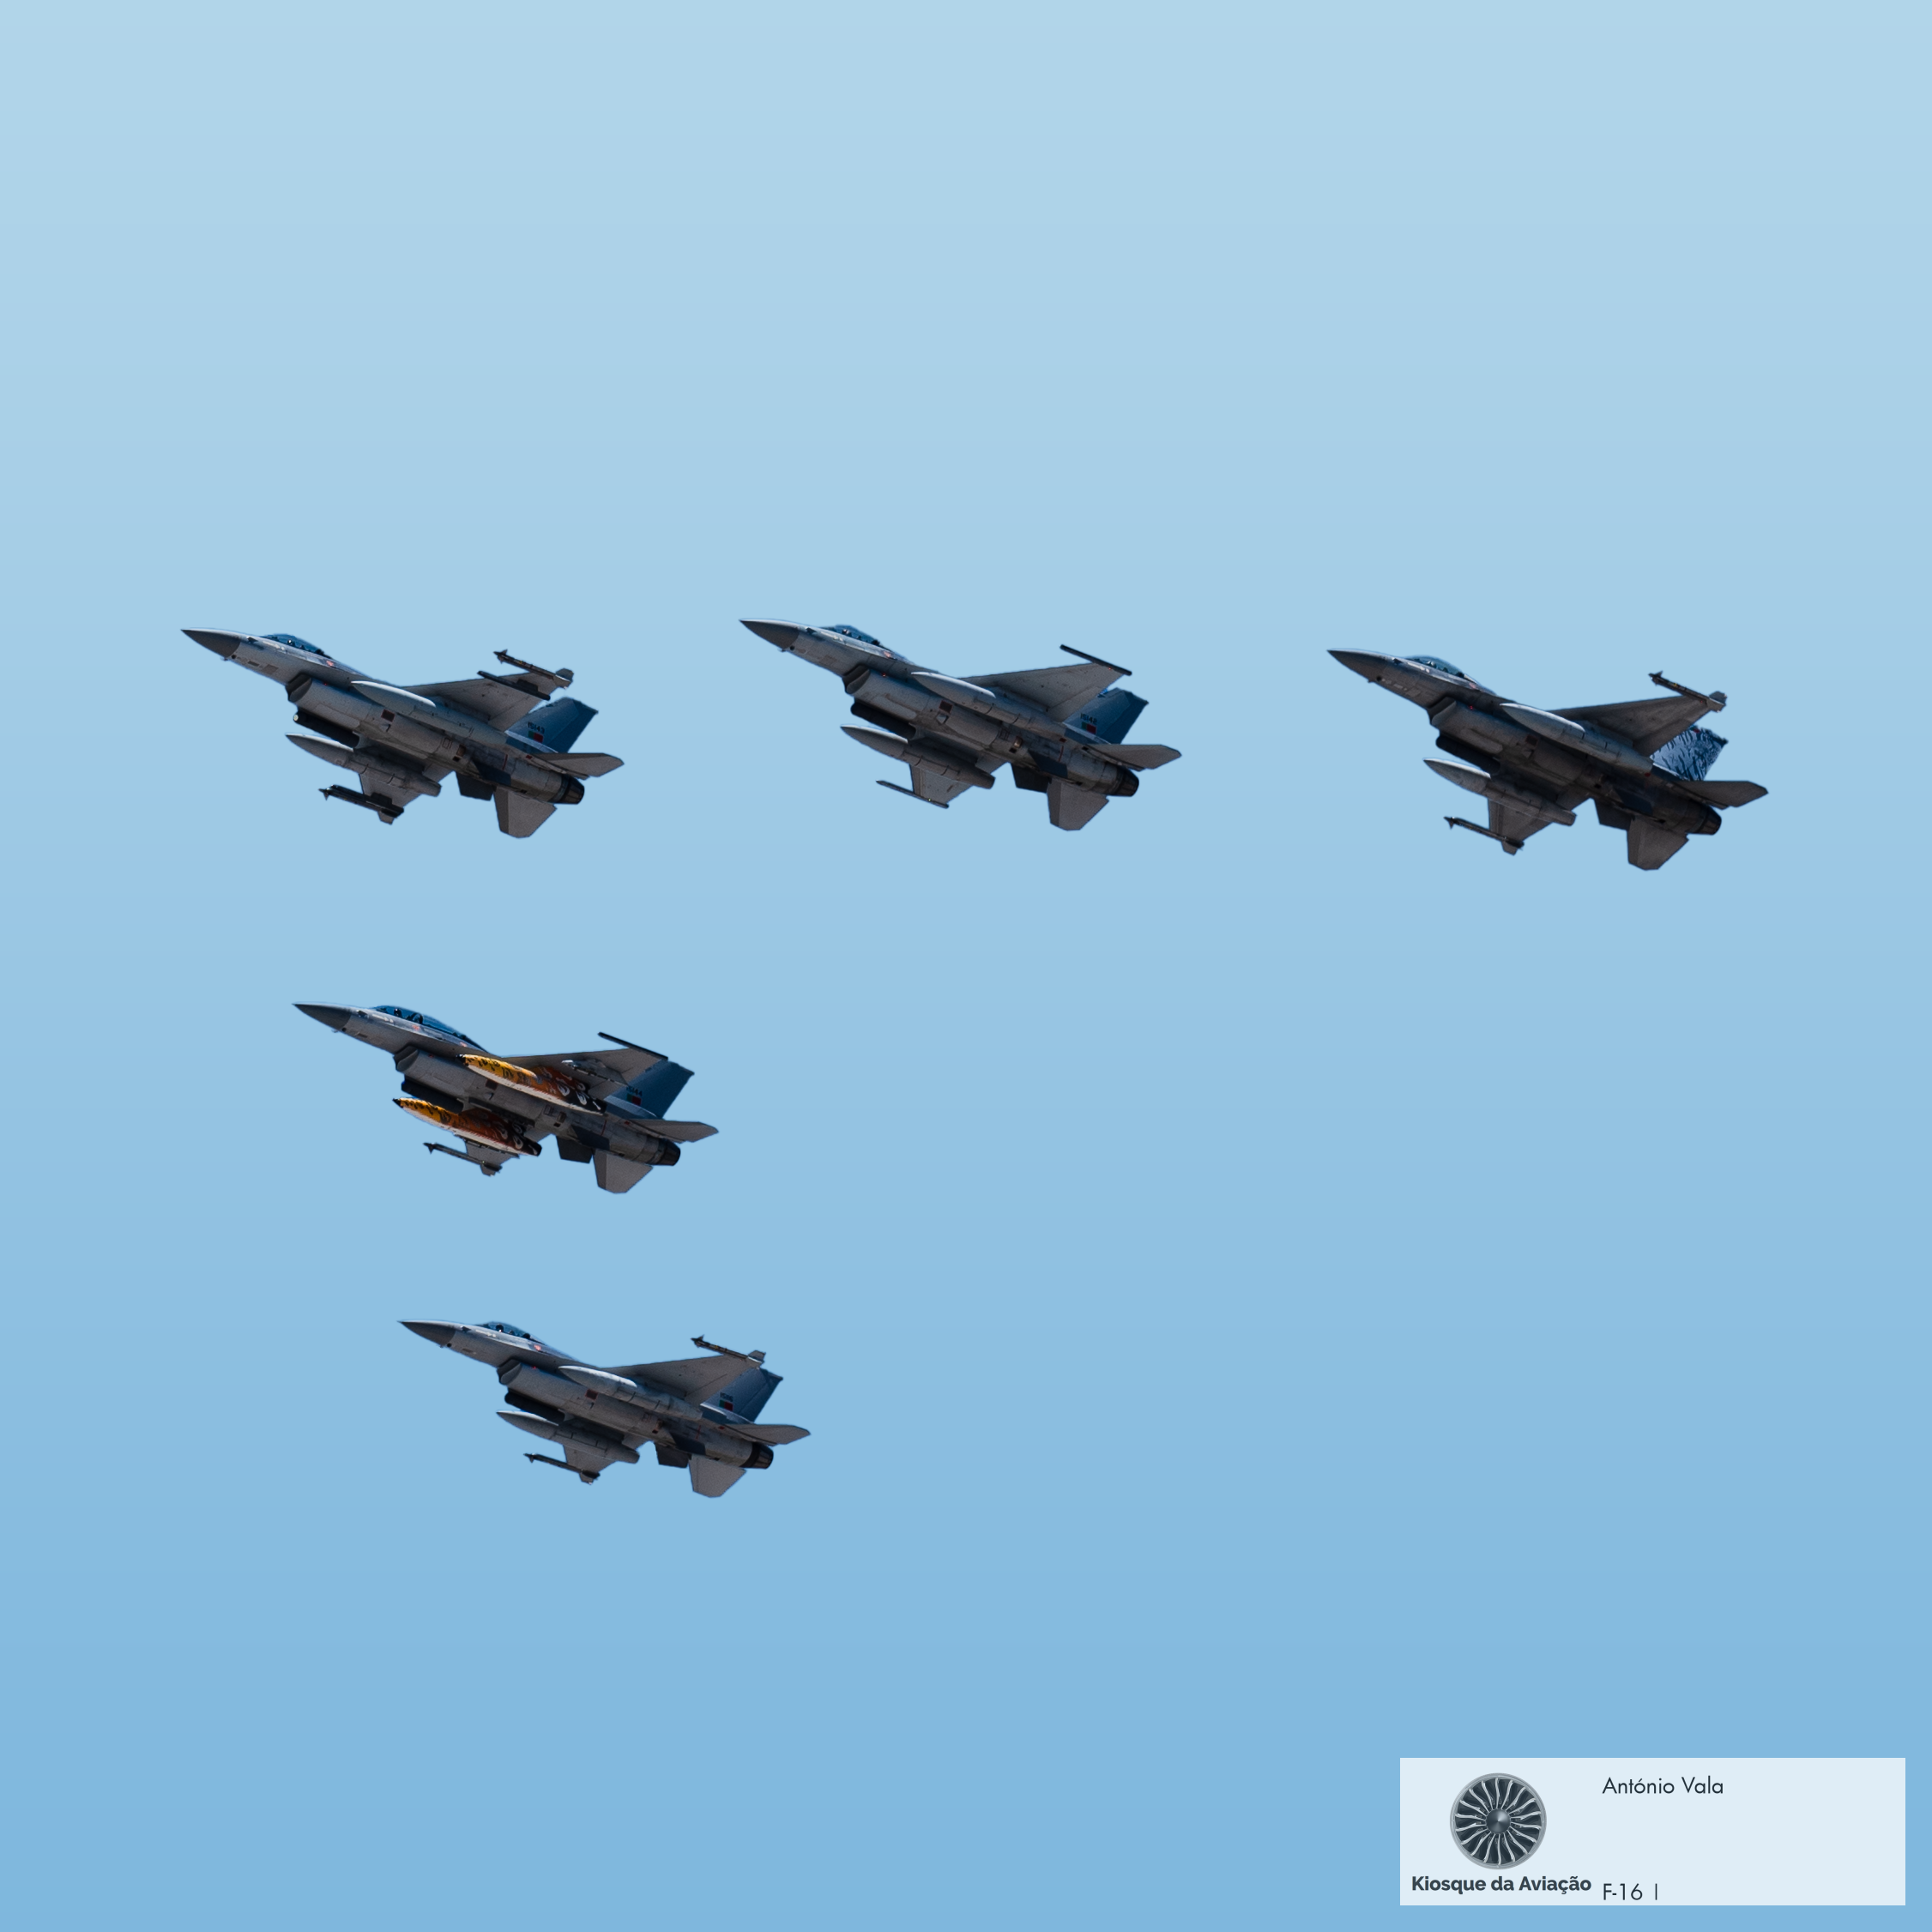 F-16 formation over Bragança